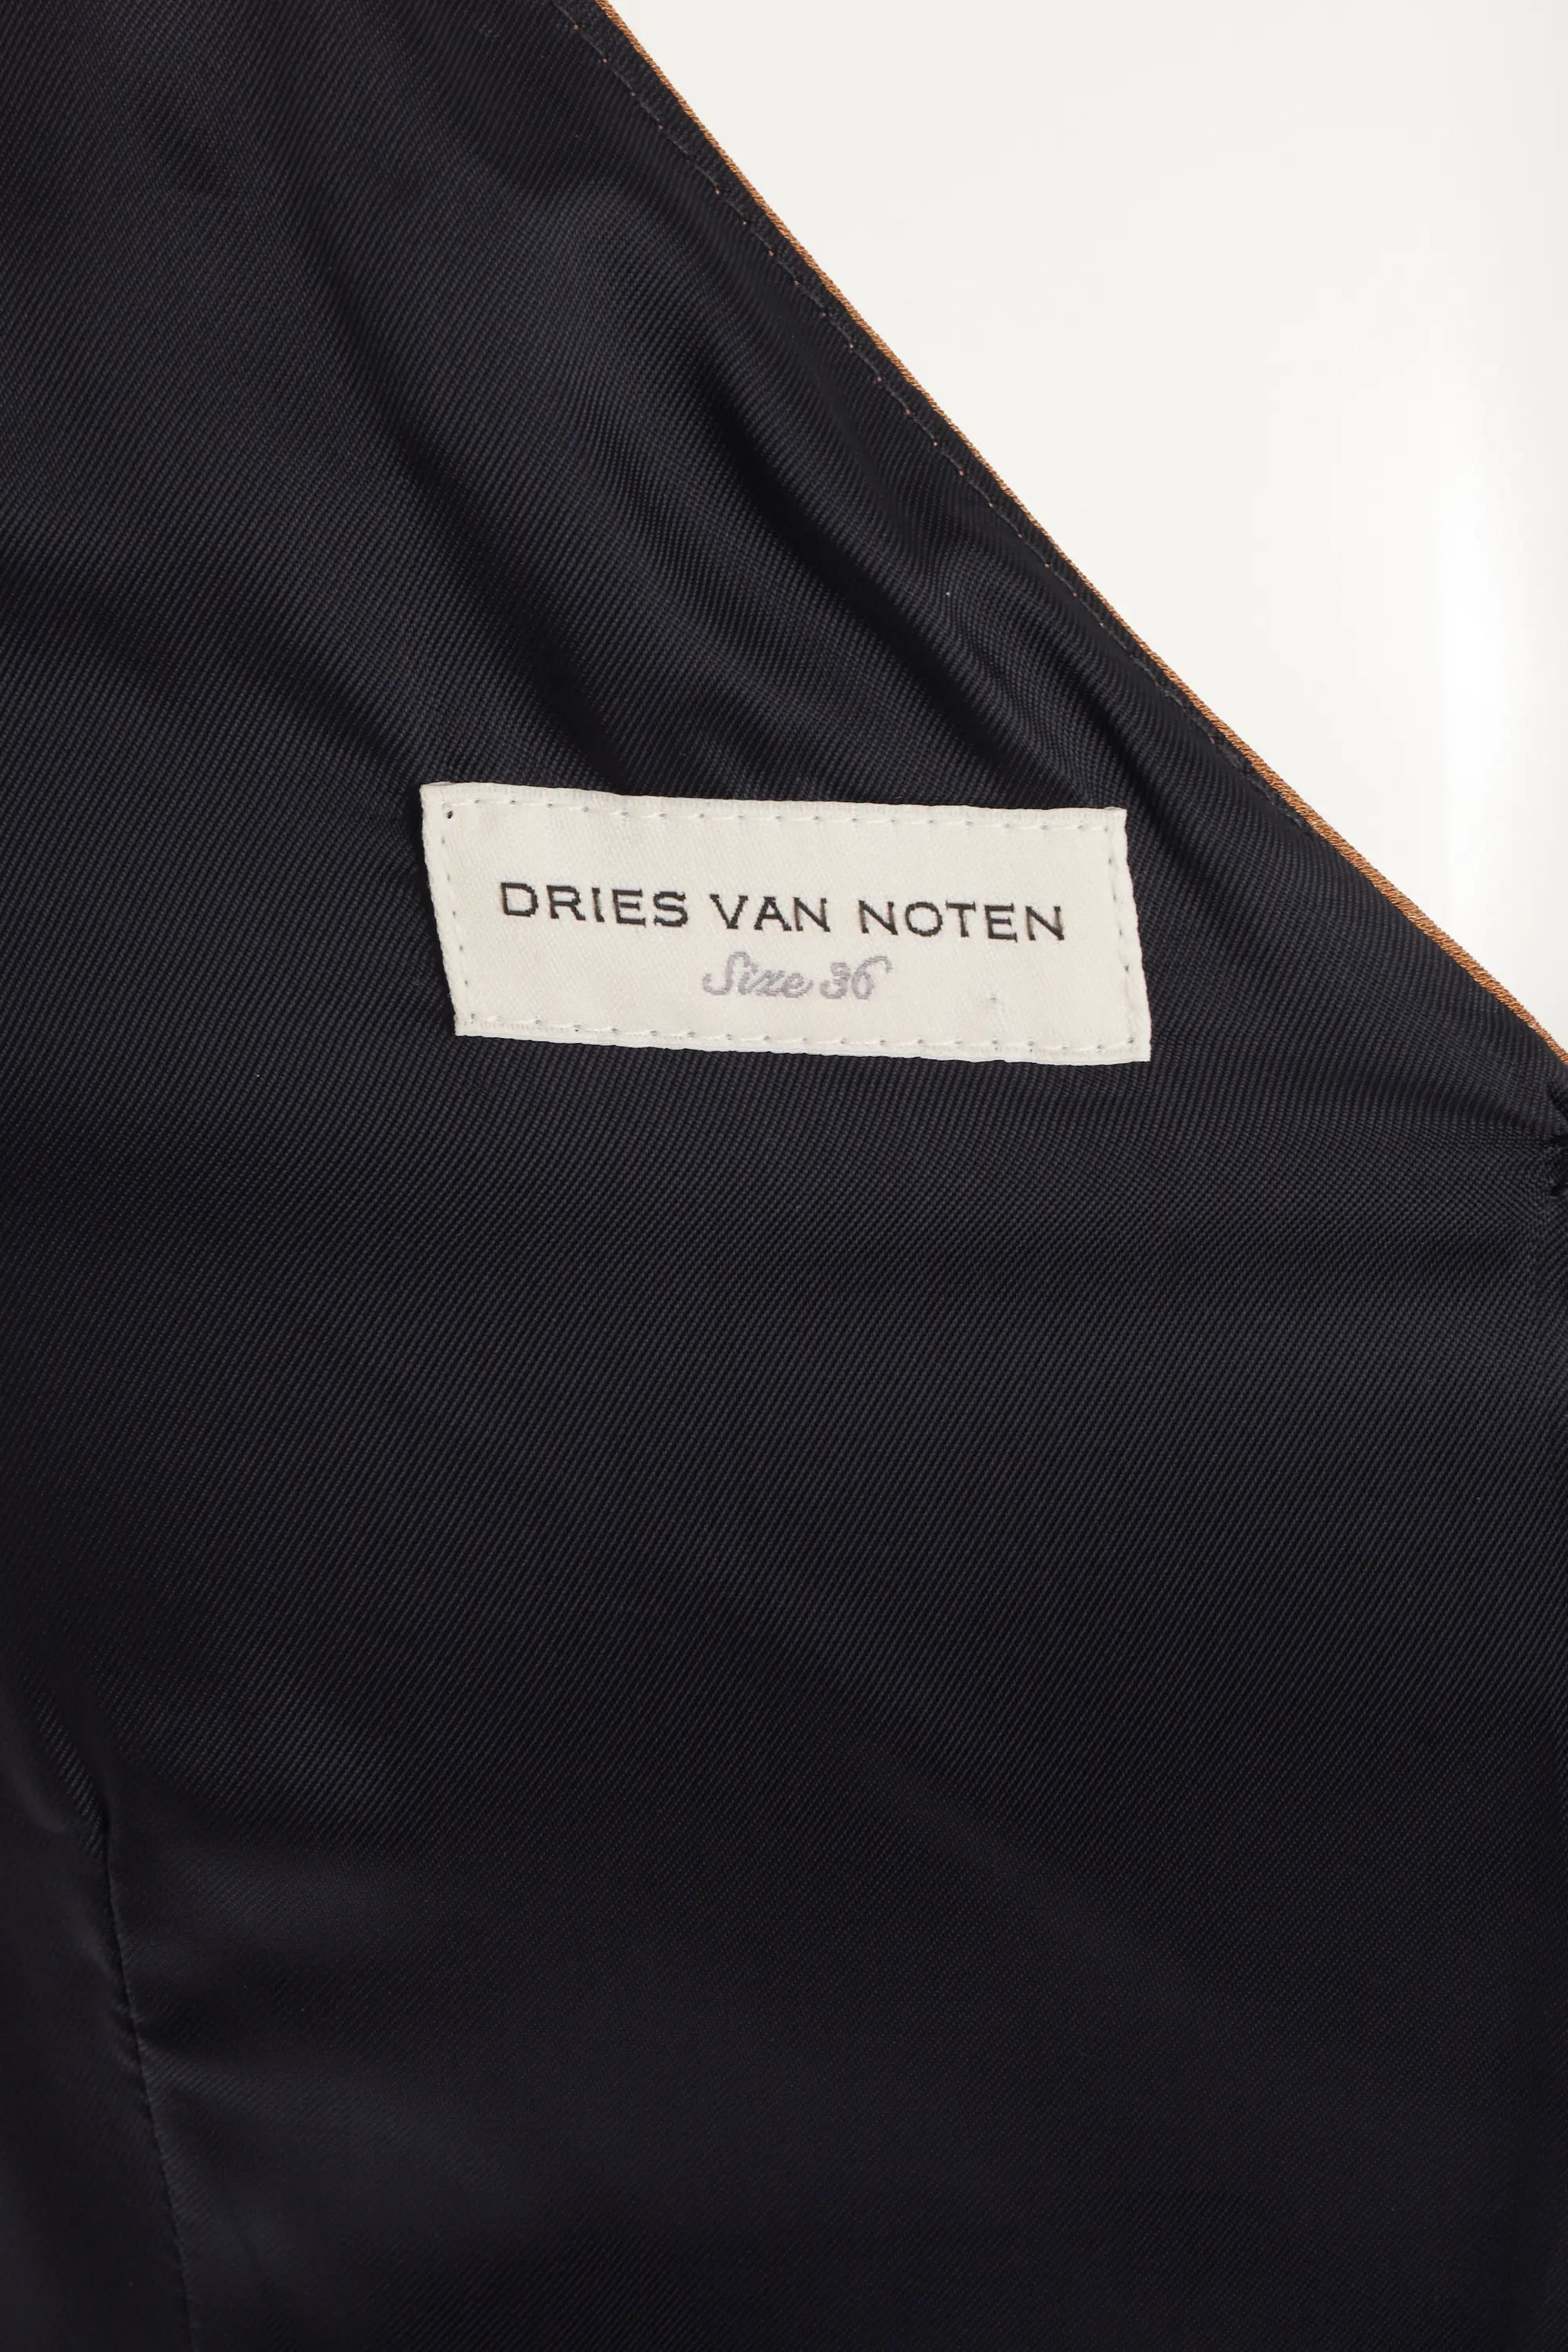 Dries Van Noten Navy and Brown Dress